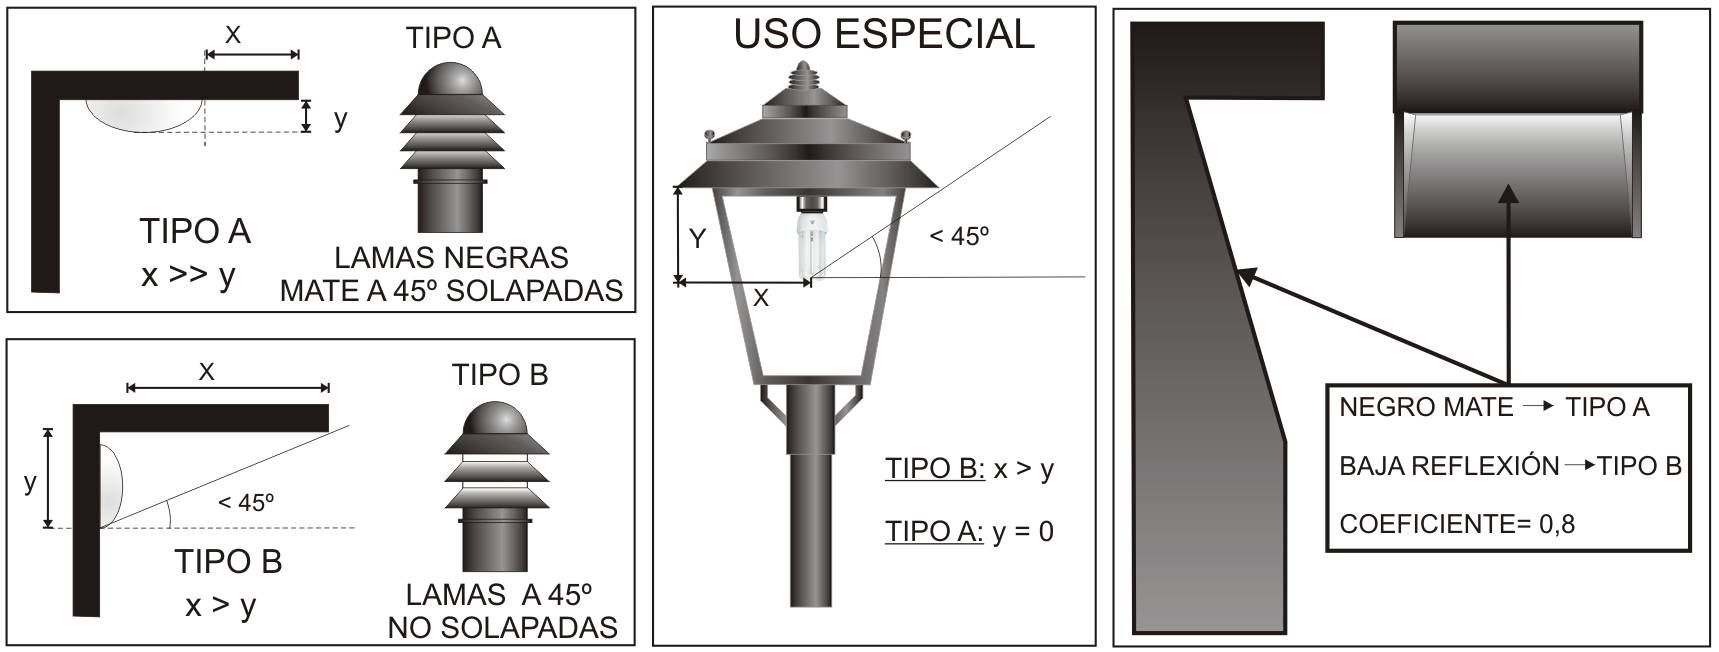 En tal sentido, se utilizan criterios para evitar la emisión de luz sobre el horizonte (Art.2 de la Ley 31/88), usar lámparas con baja radiación ultravioleta (Art. 7 de R.D.